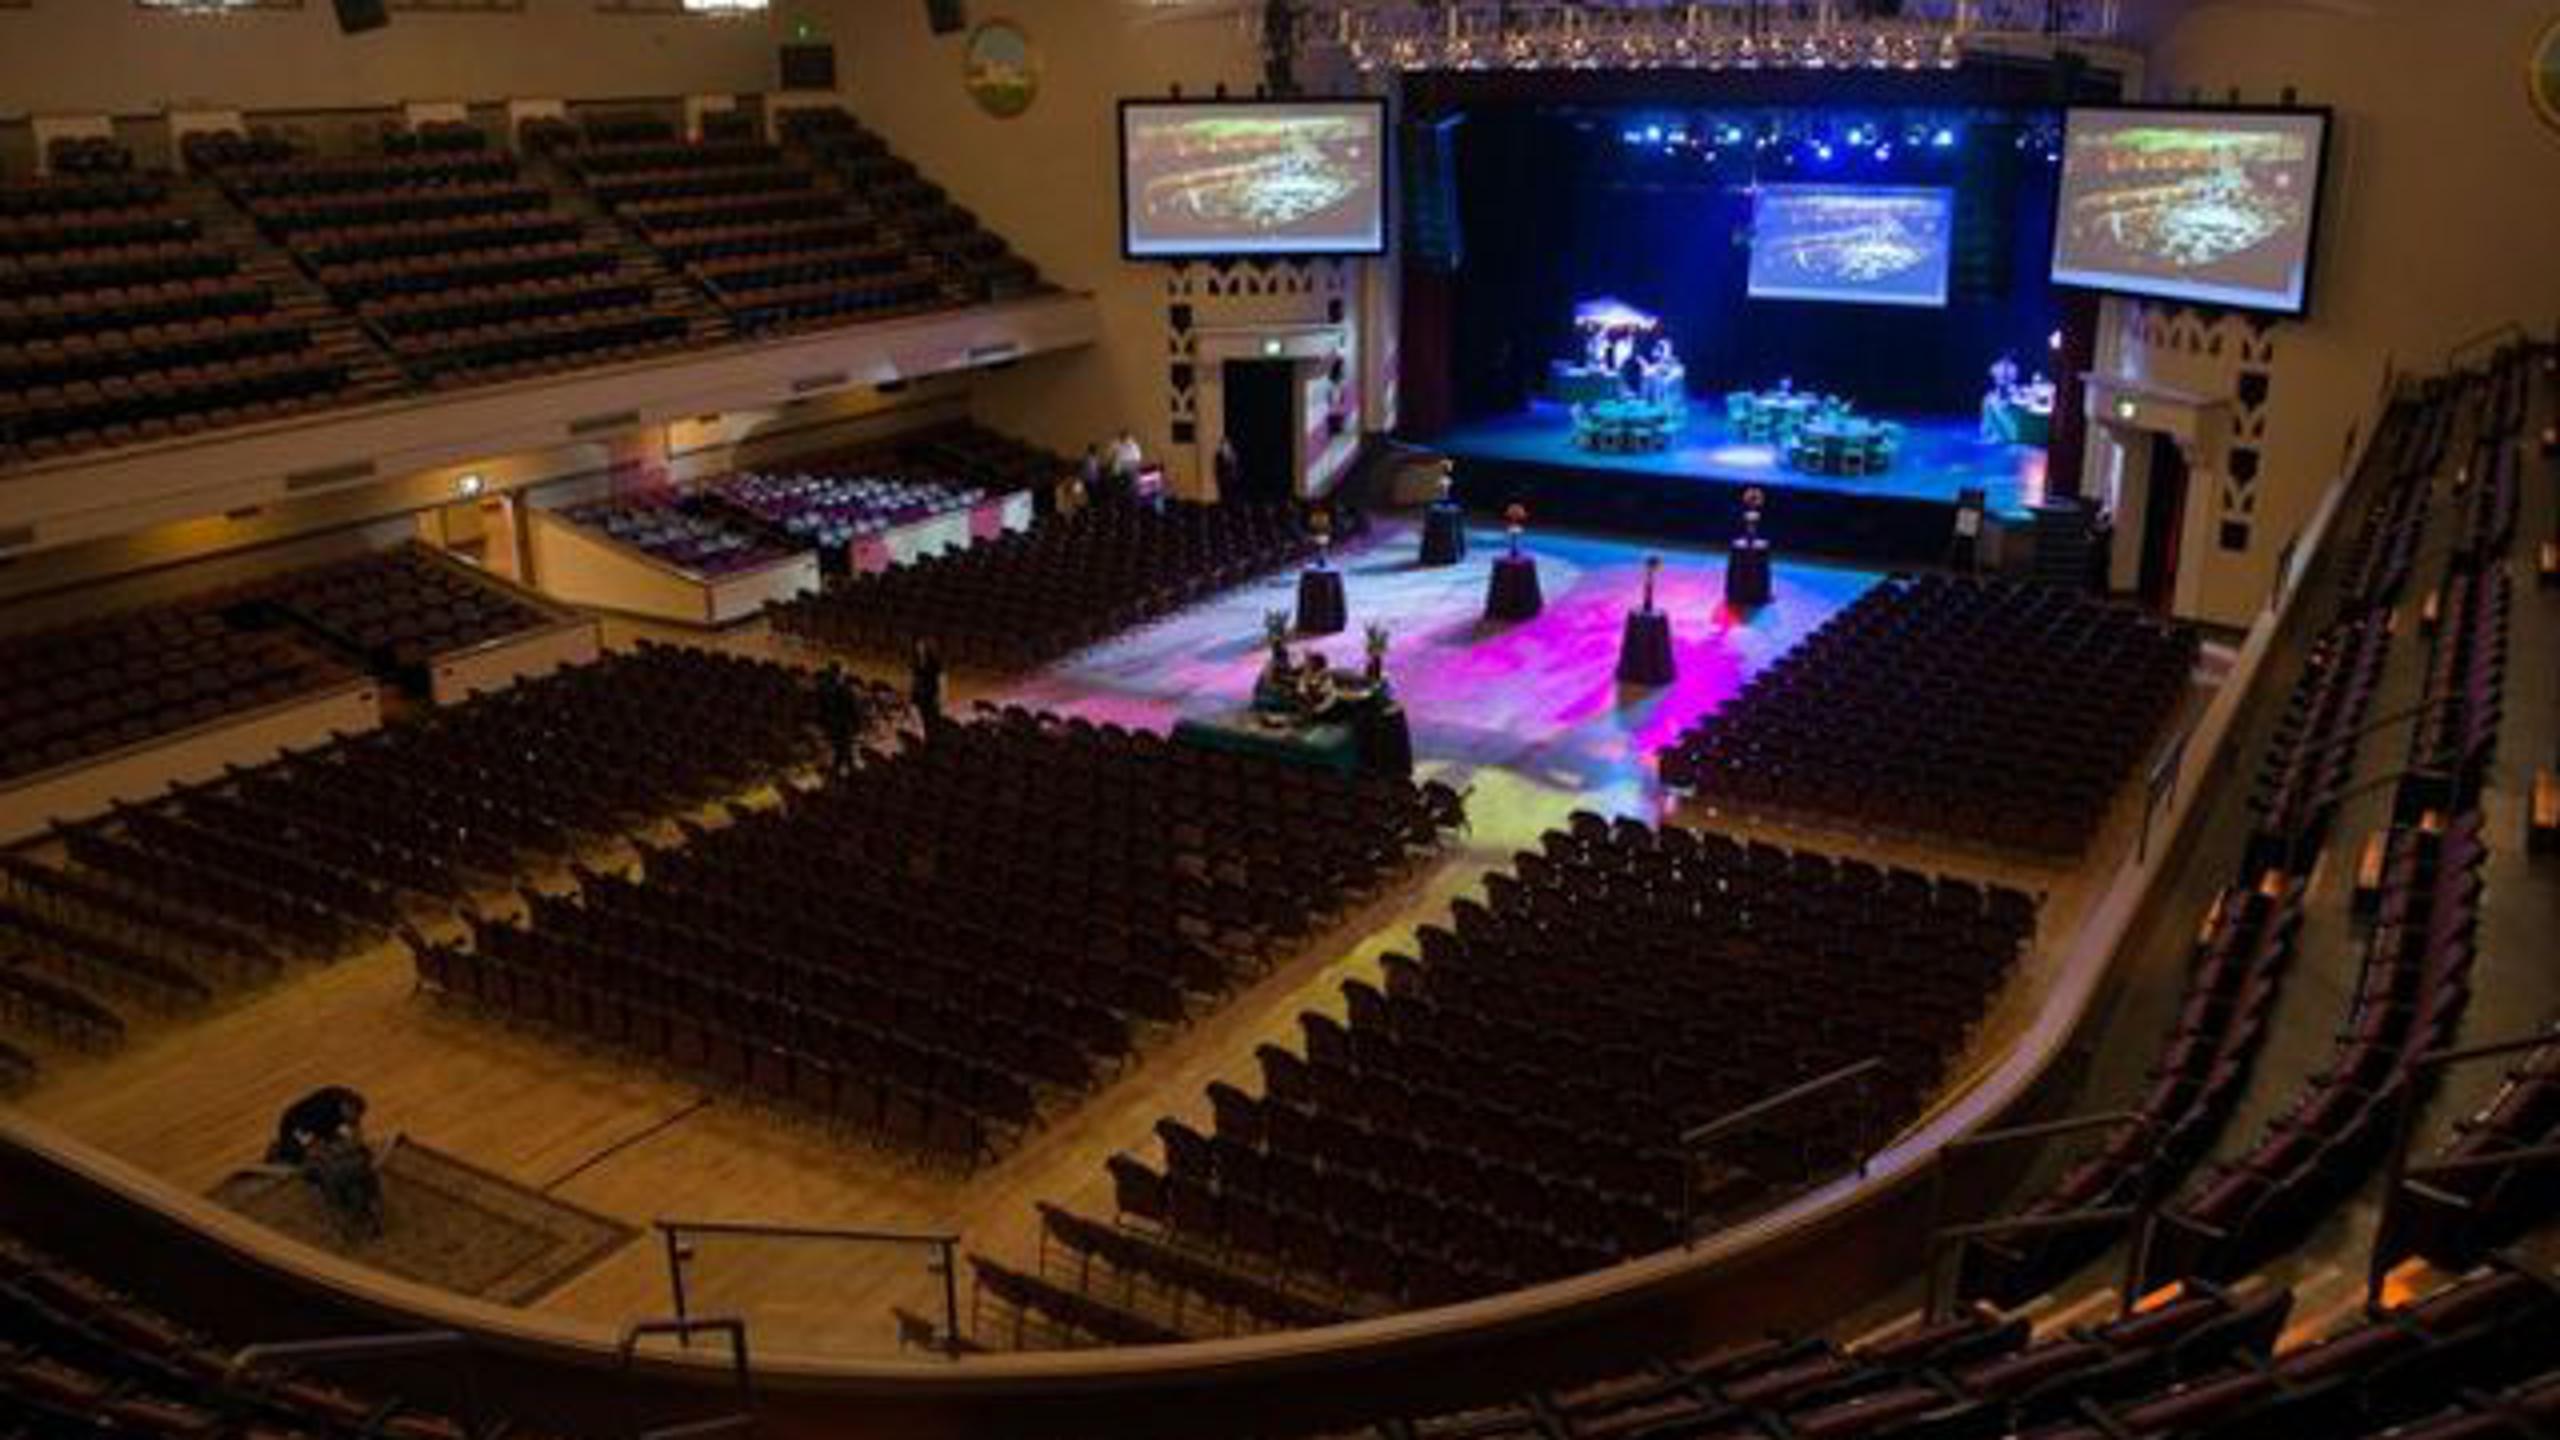 San Jose Civic Auditorium entradas y conciertos 2022 2023 Wegow